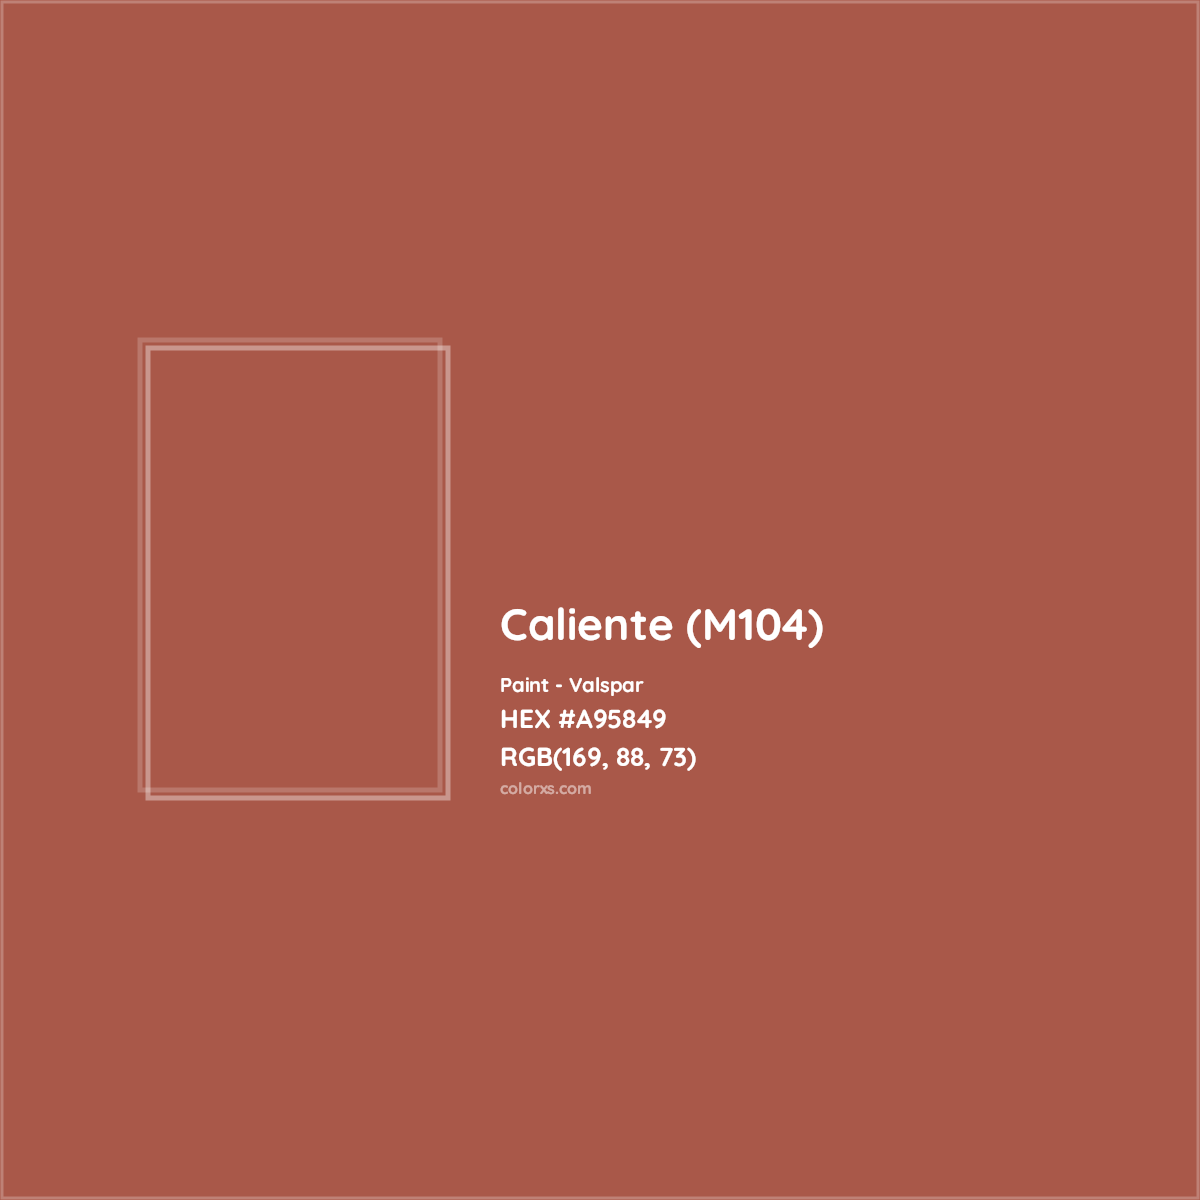 HEX #A95849 Caliente (M104) Paint Valspar - Color Code